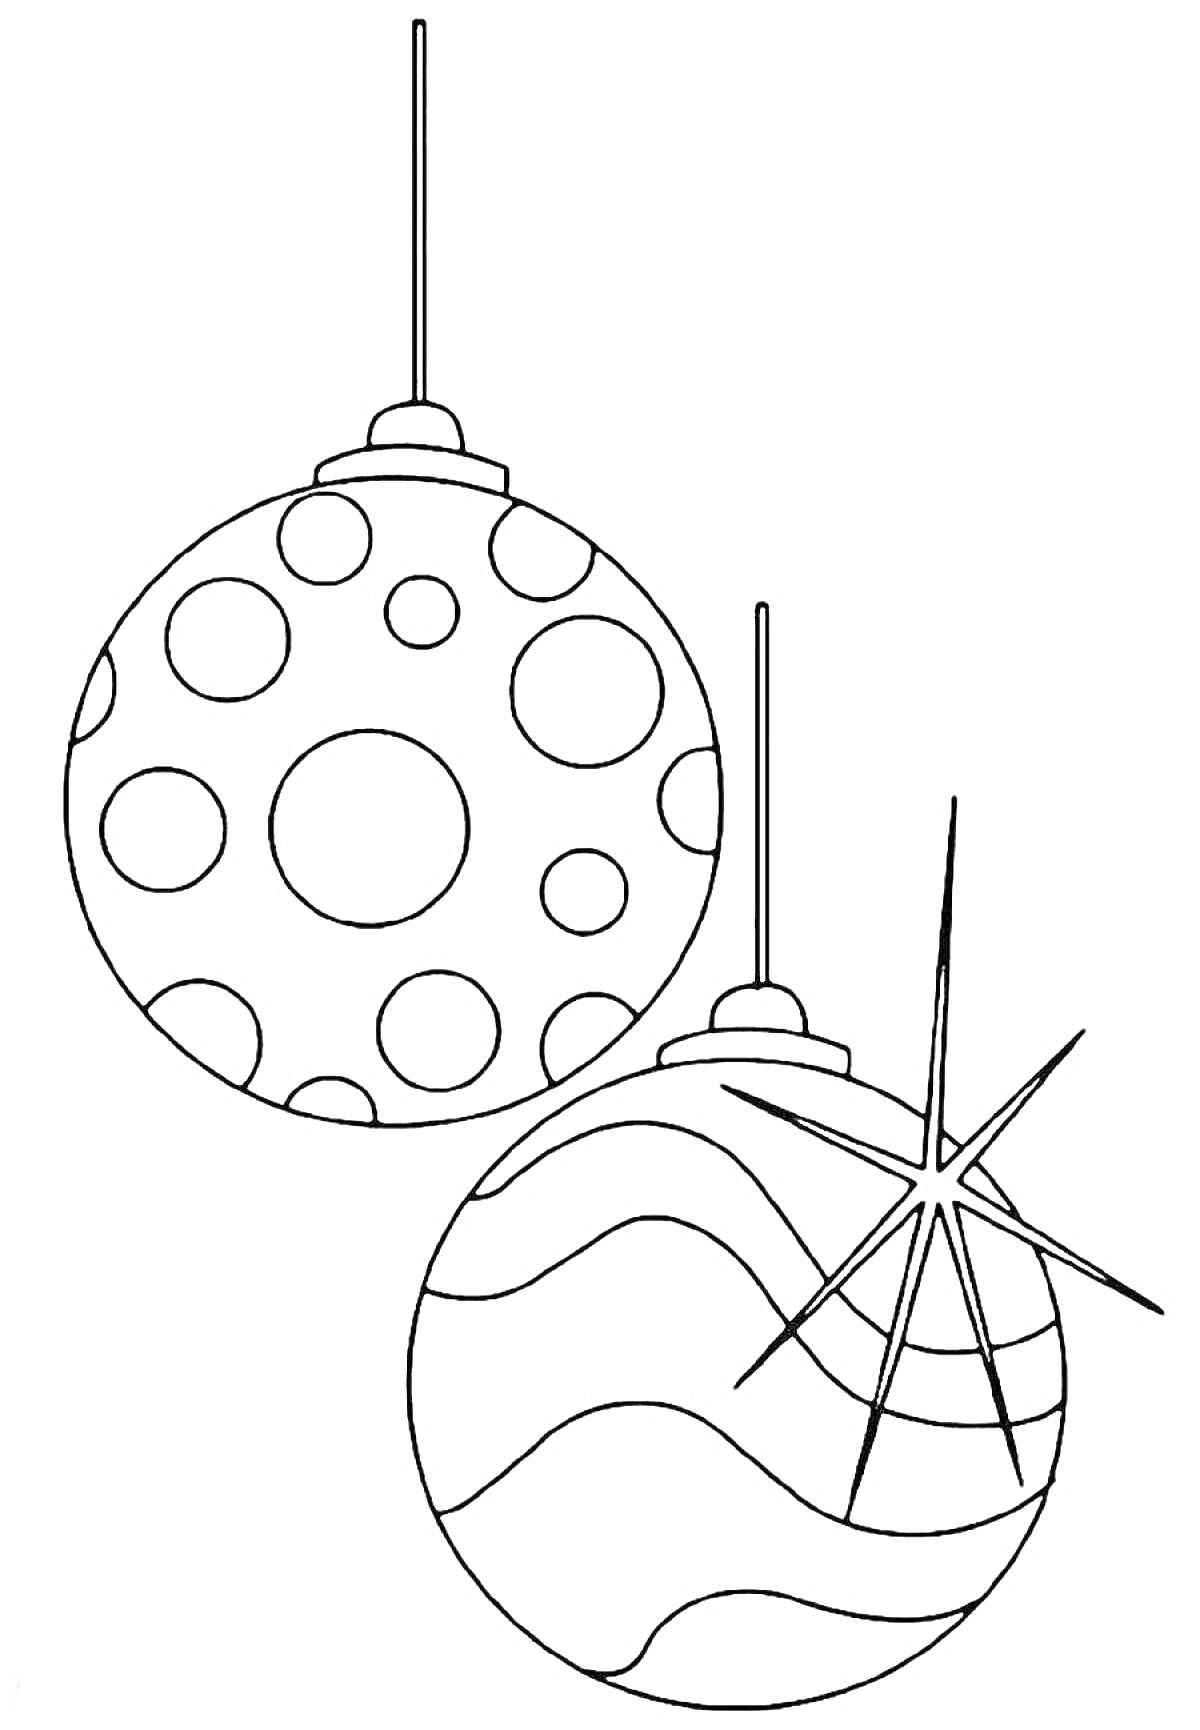 Раскраска Два новогодних шара, один с круглым узором, другой с волнистыми линиями и декоративной звездой